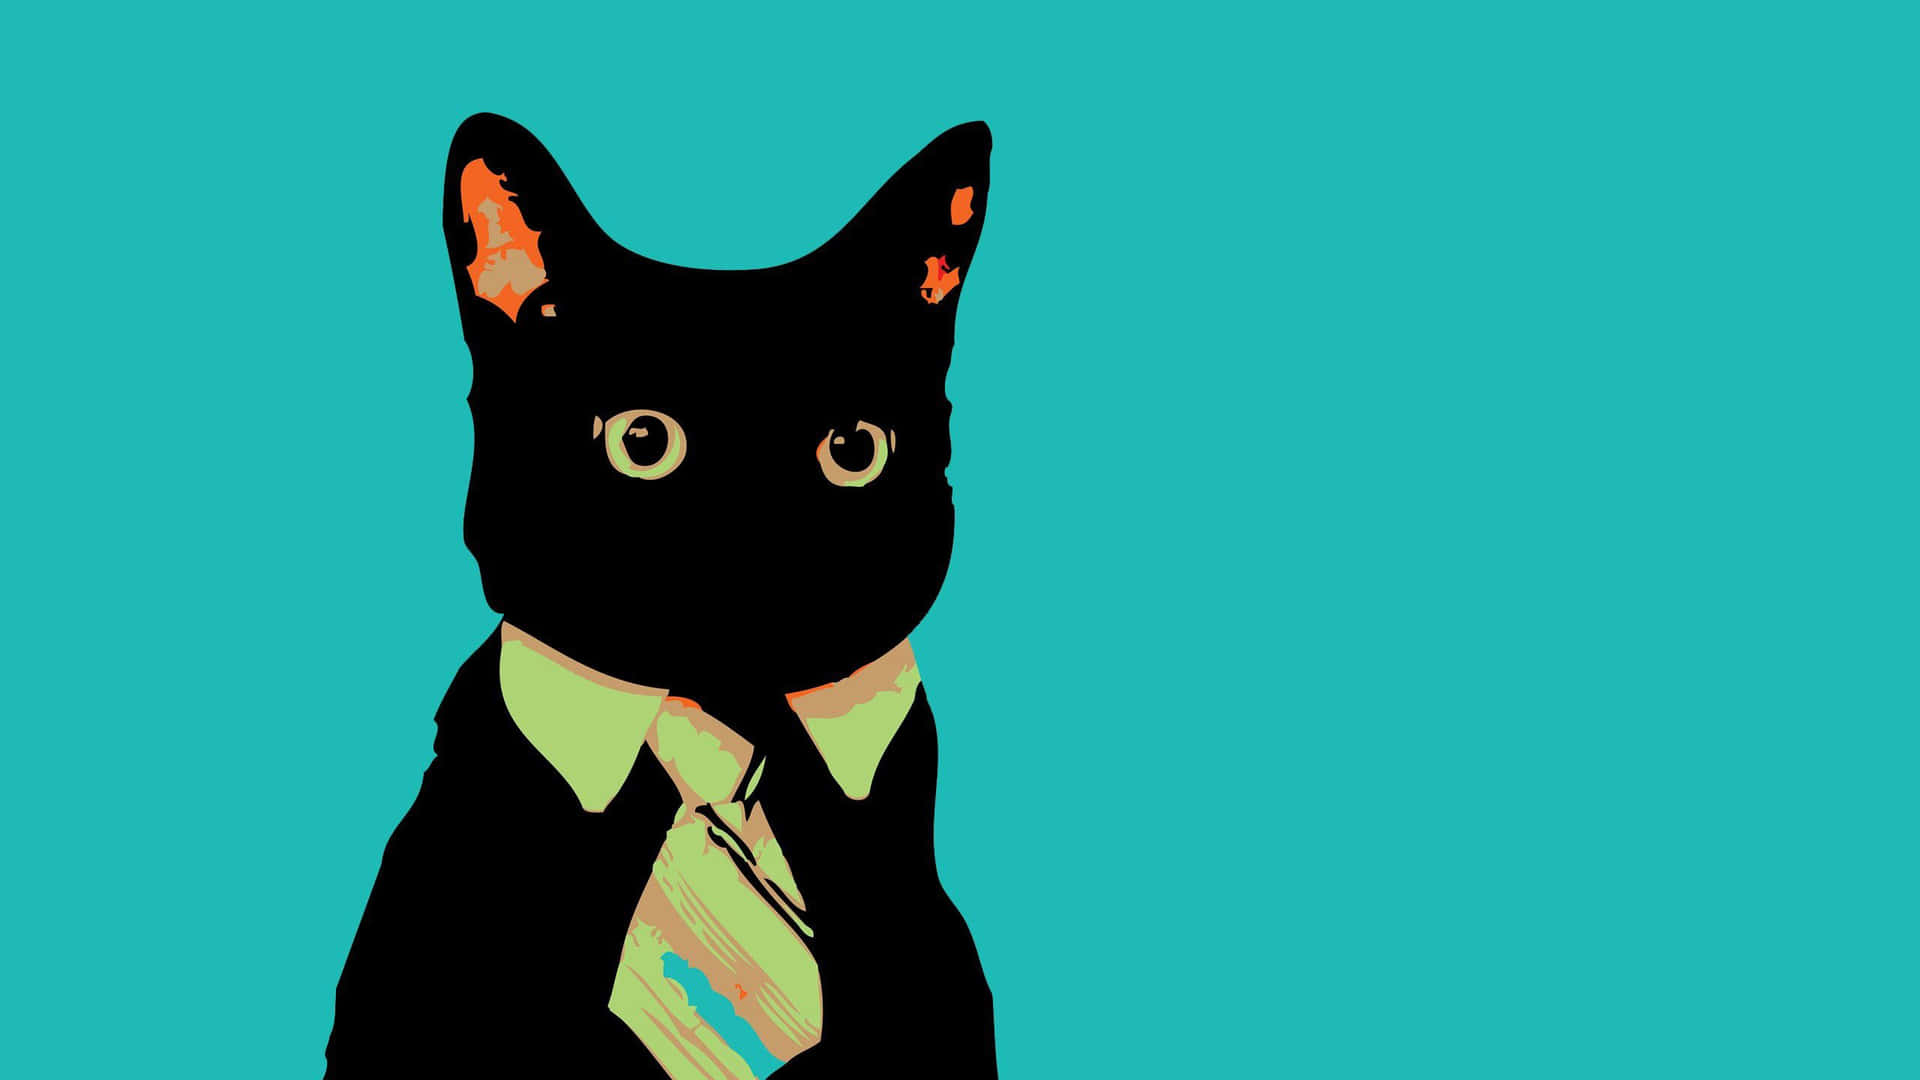 Imagende Un Gato Negro Con Un Meme Extraño